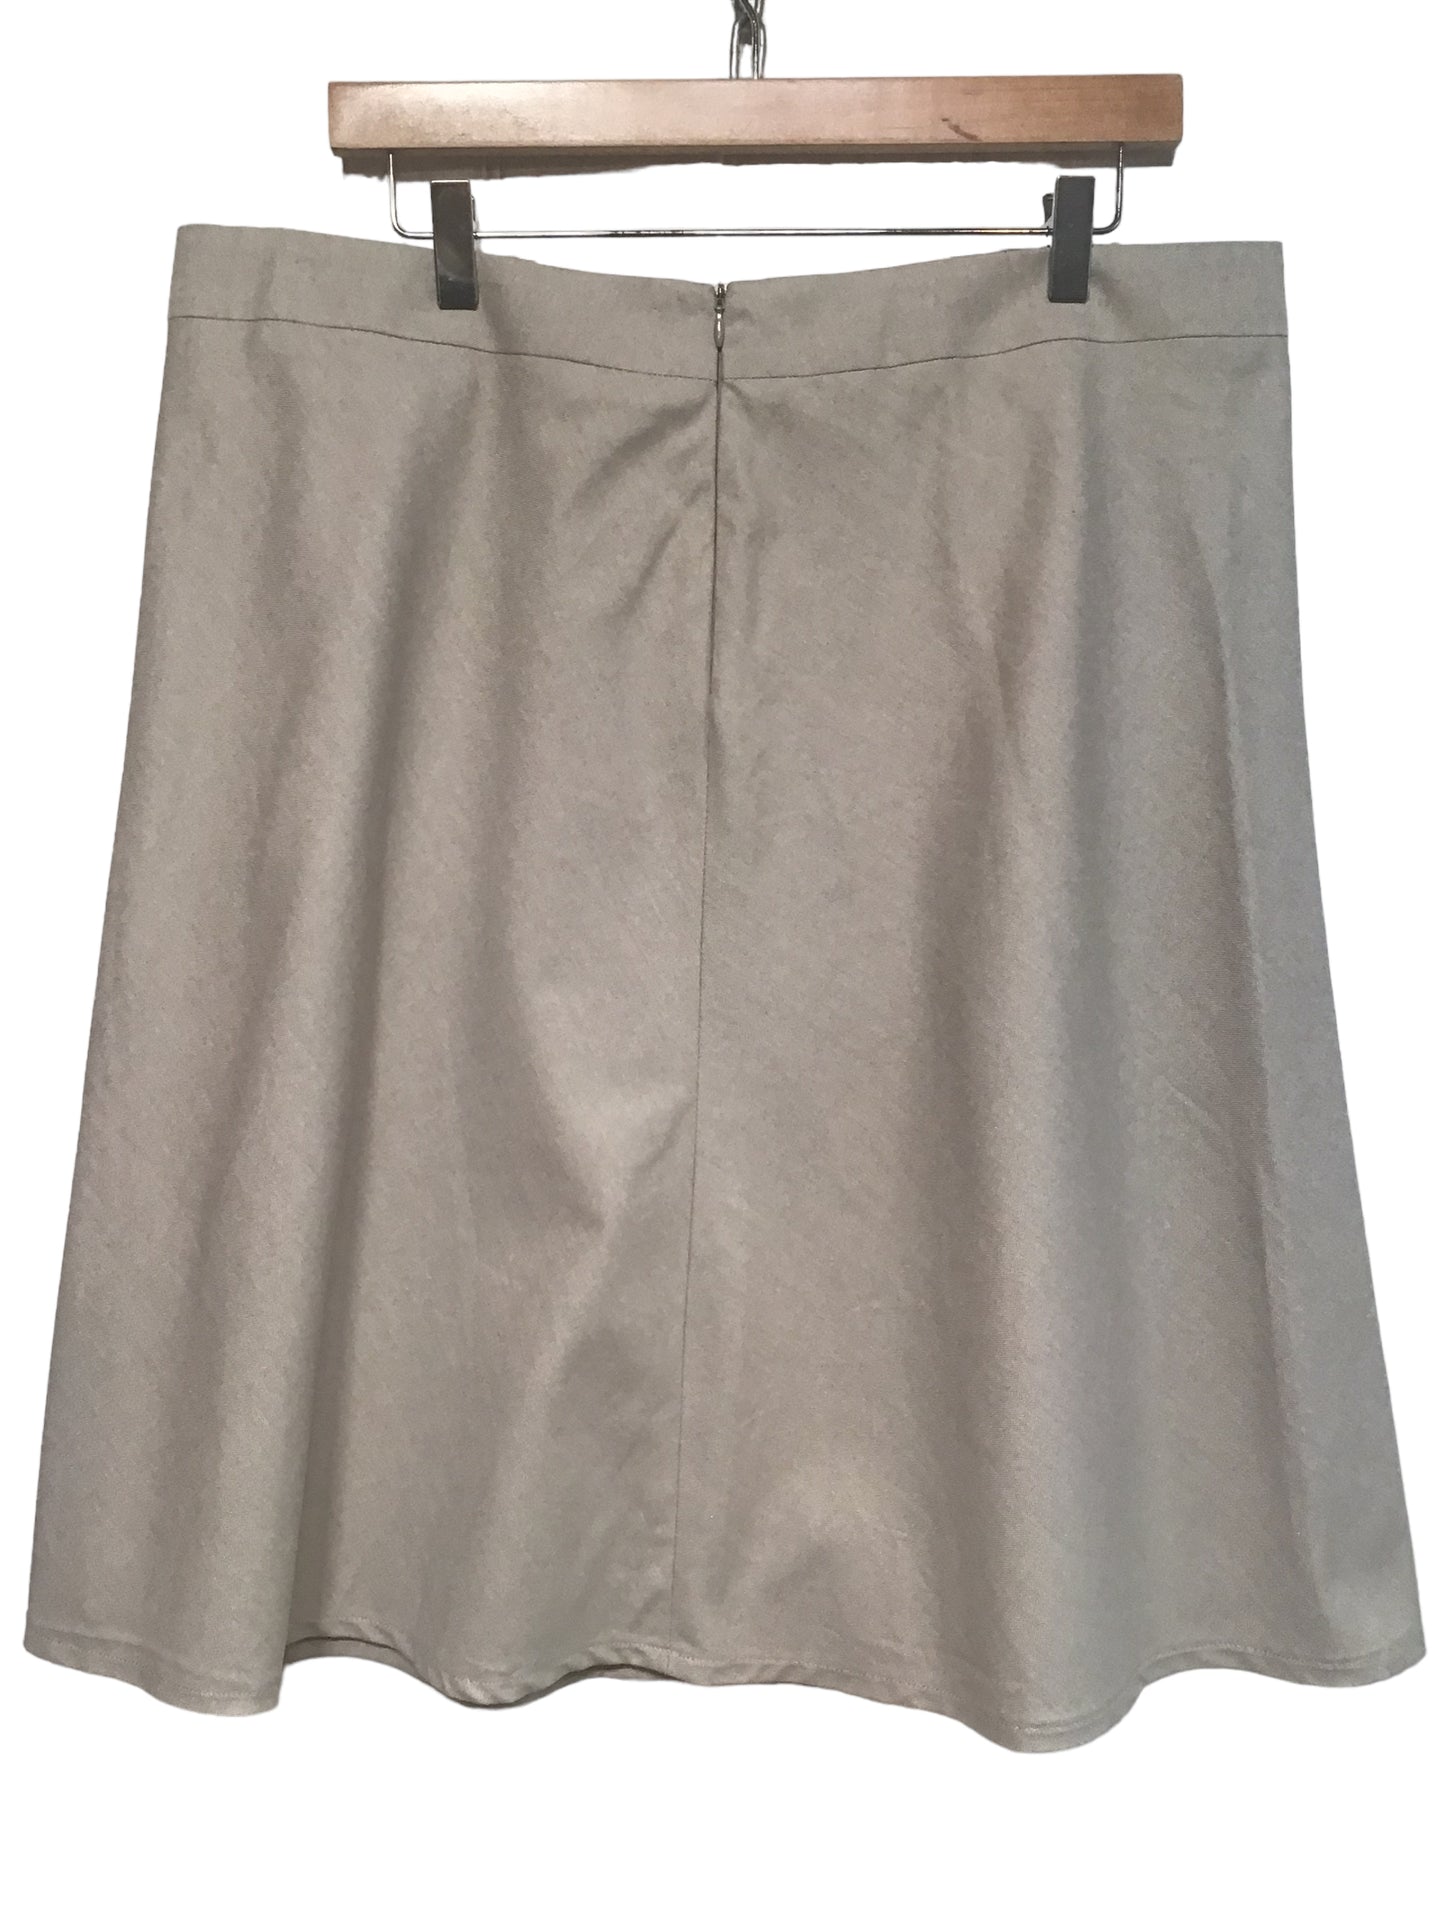 Magee Skirt (Size XXL)